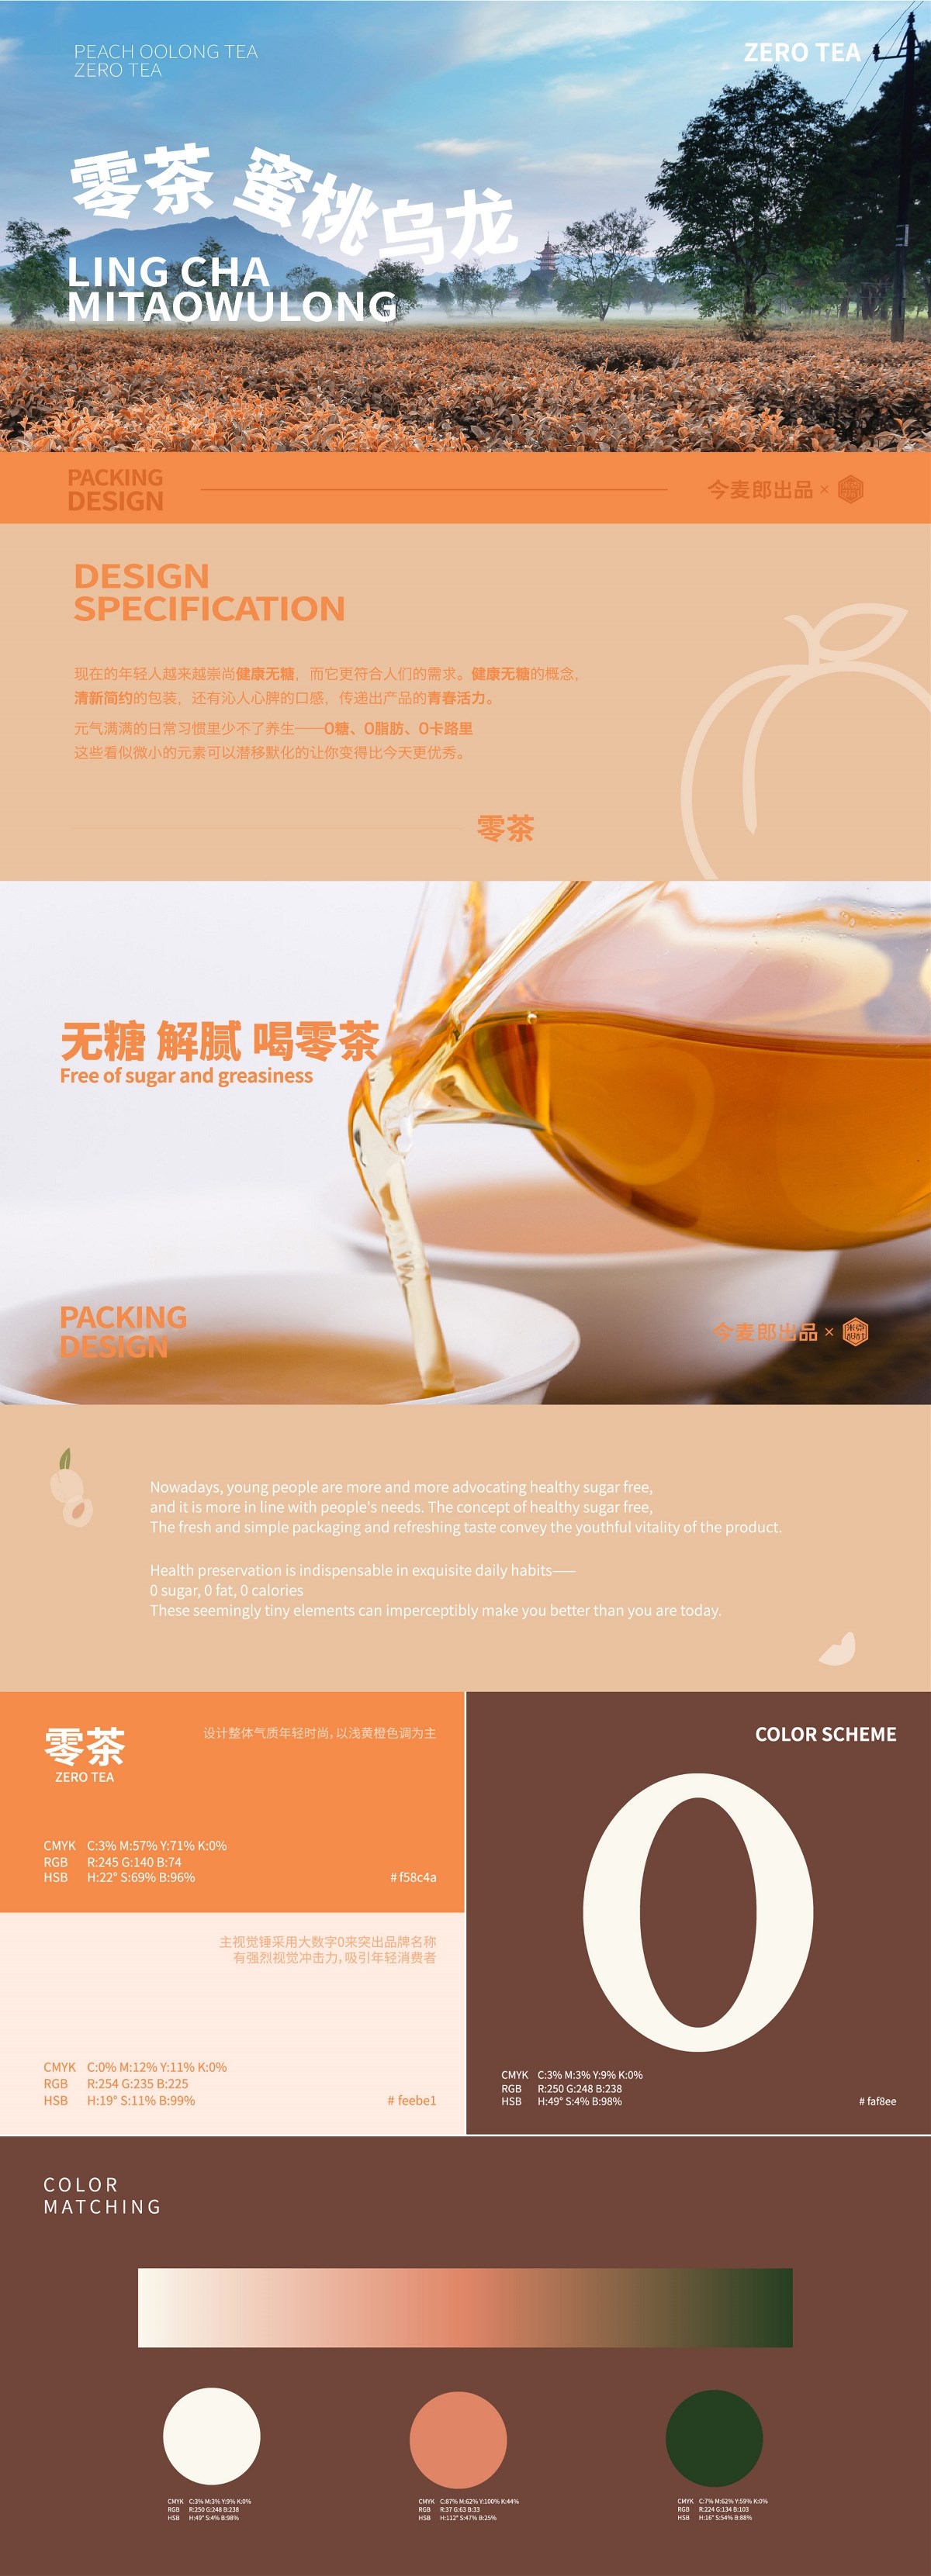 零茶—今麦郎蜜桃乌龙茶饮料包装设计瓶型设计瓶标设计